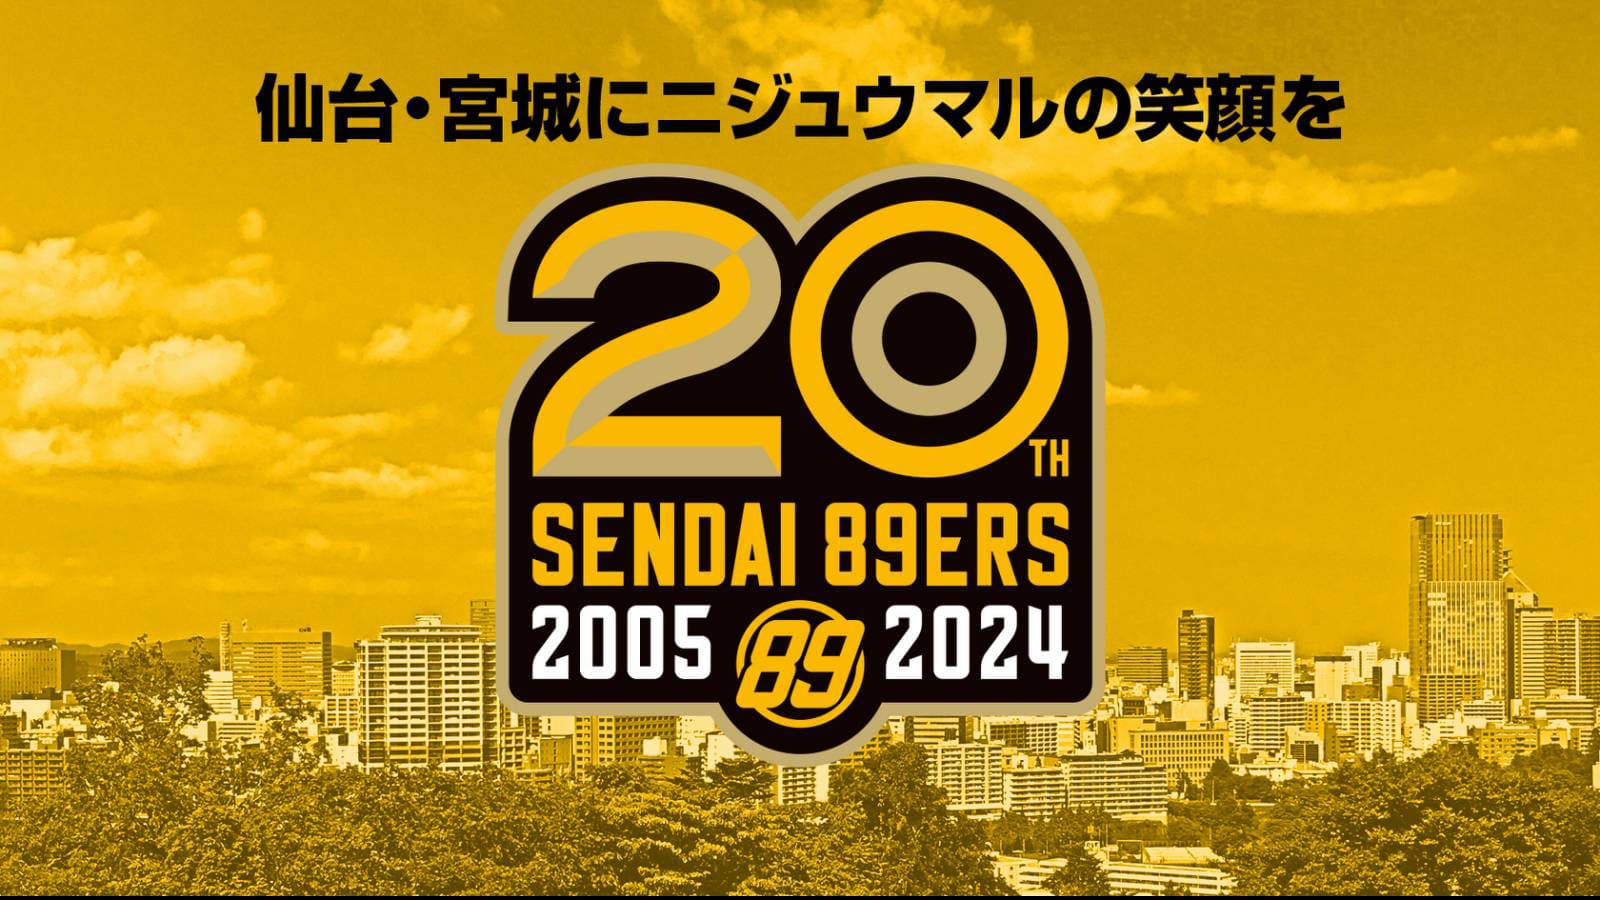 仙台89ERS 20周年プロジェクト